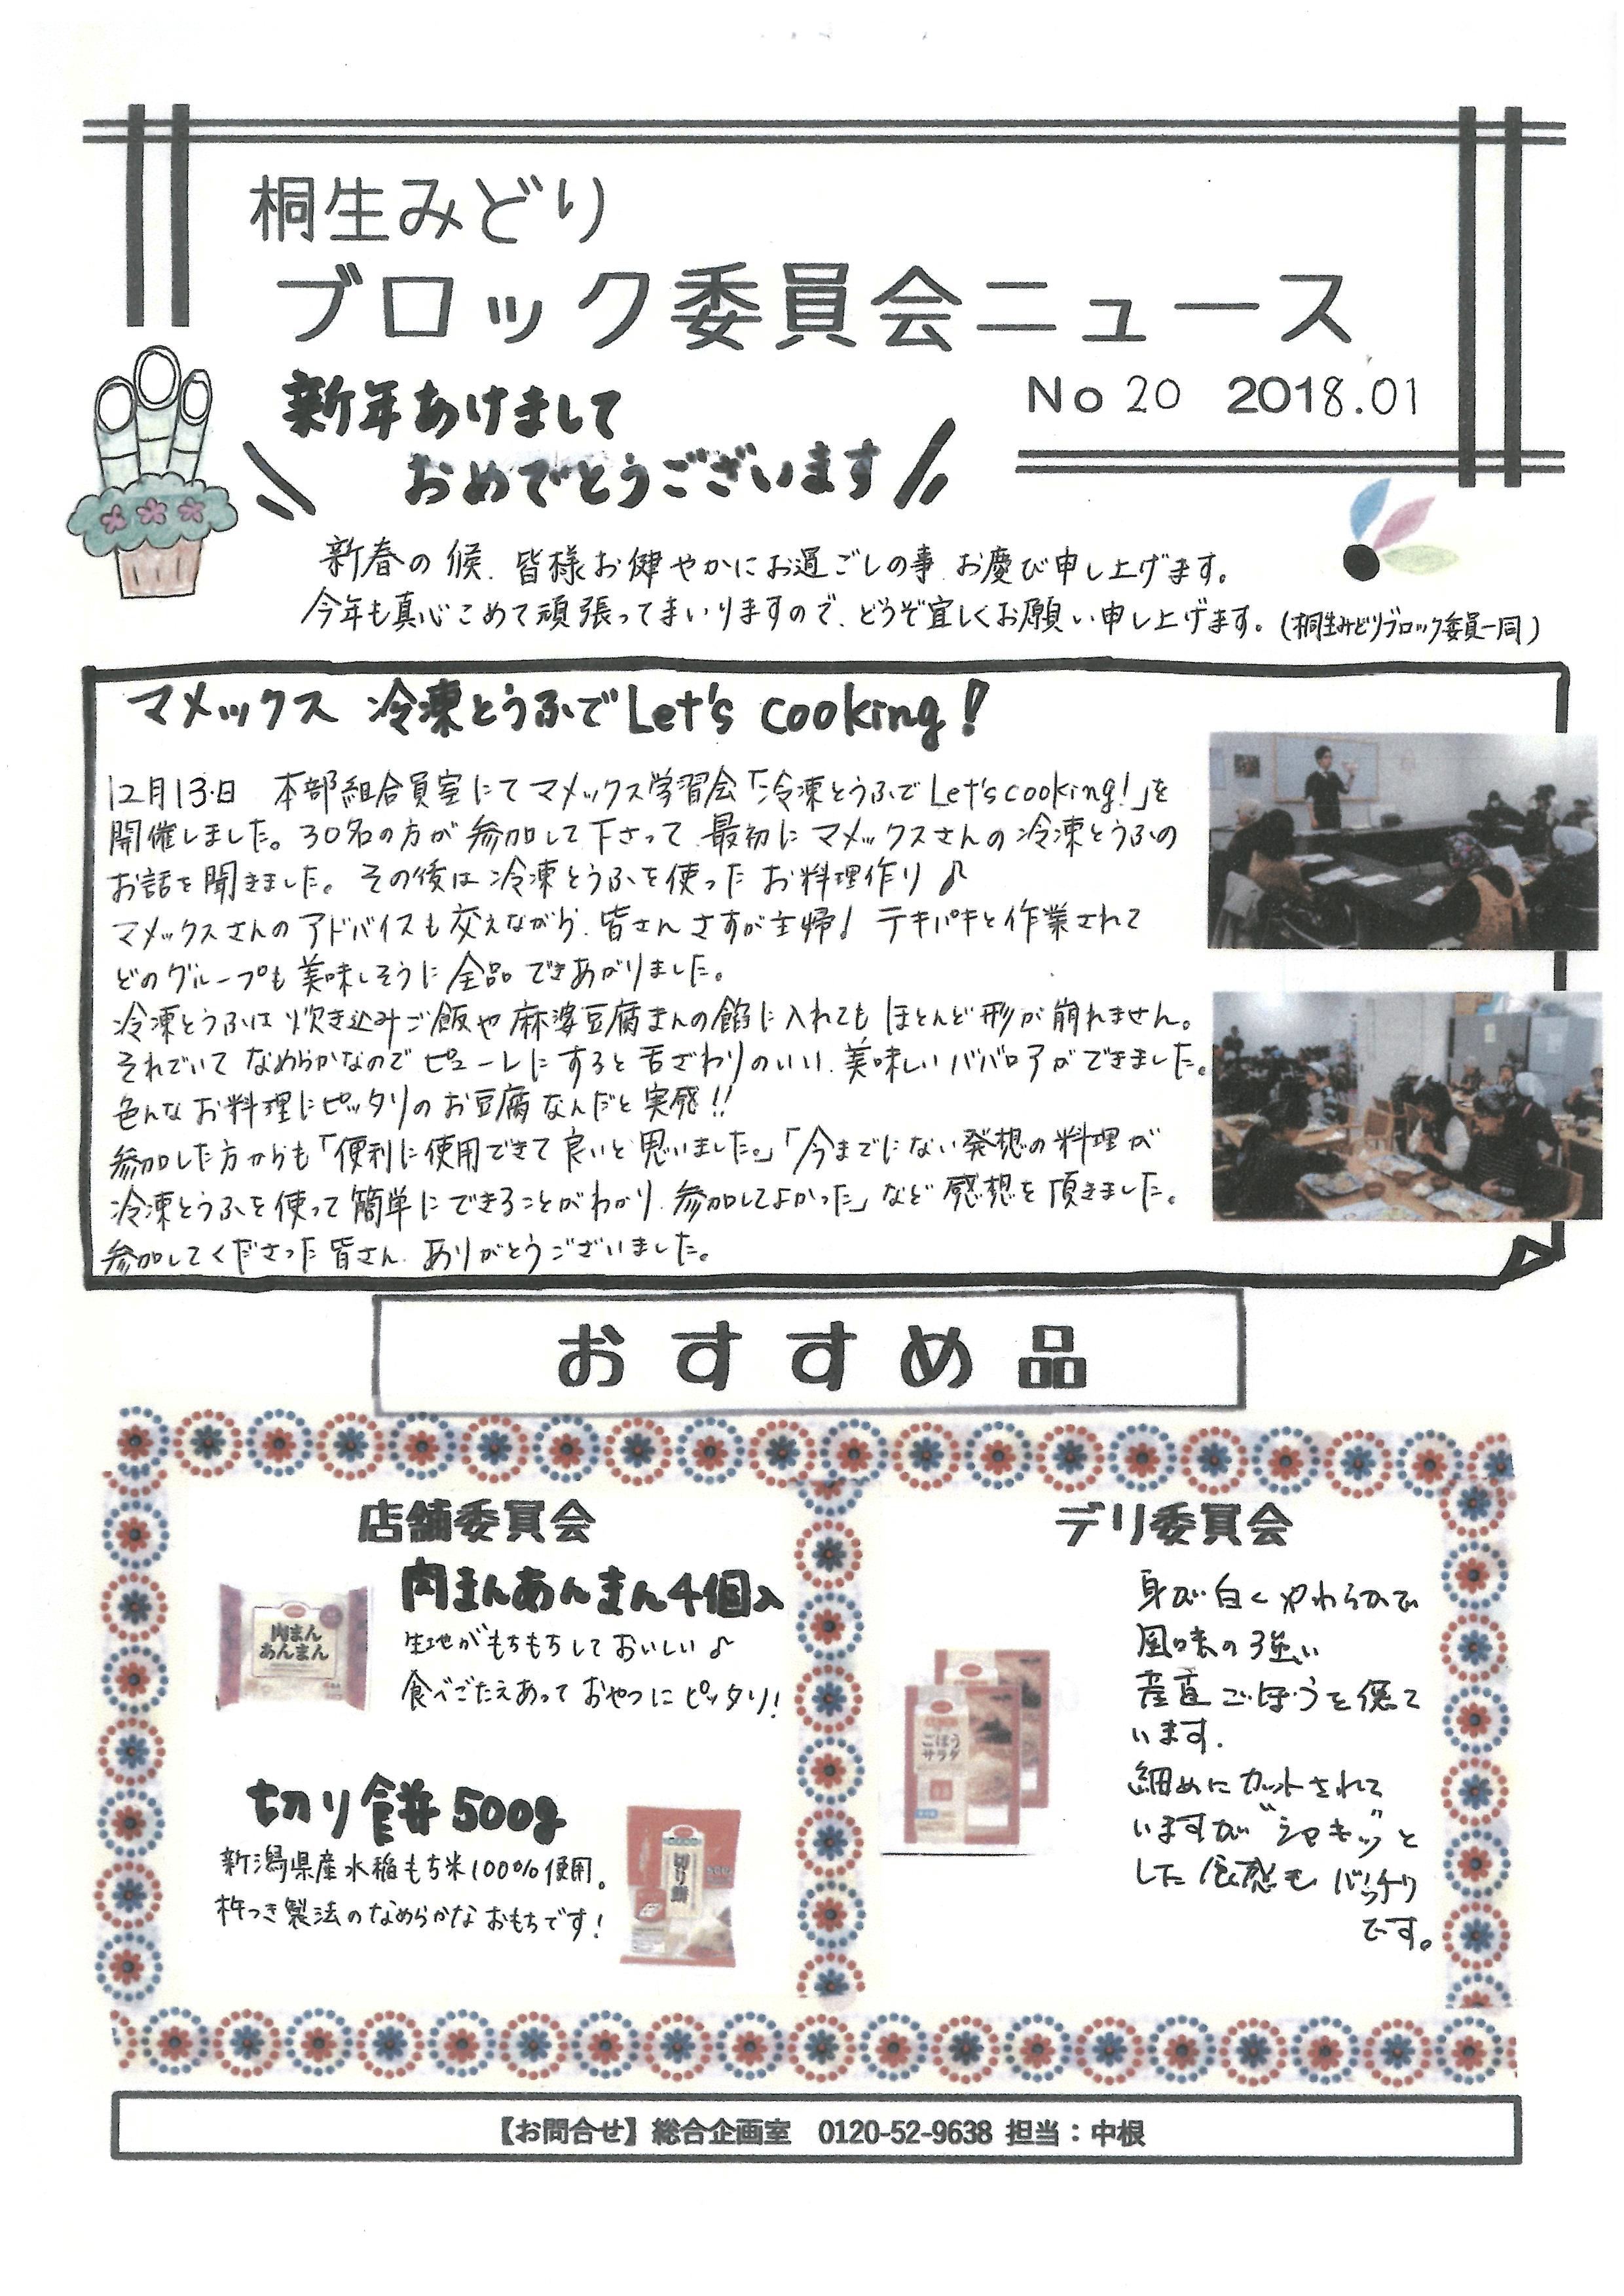 https://gunma.coopnet.or.jp/event/ev/ev_info/img/1801_b4_news_01.jpg